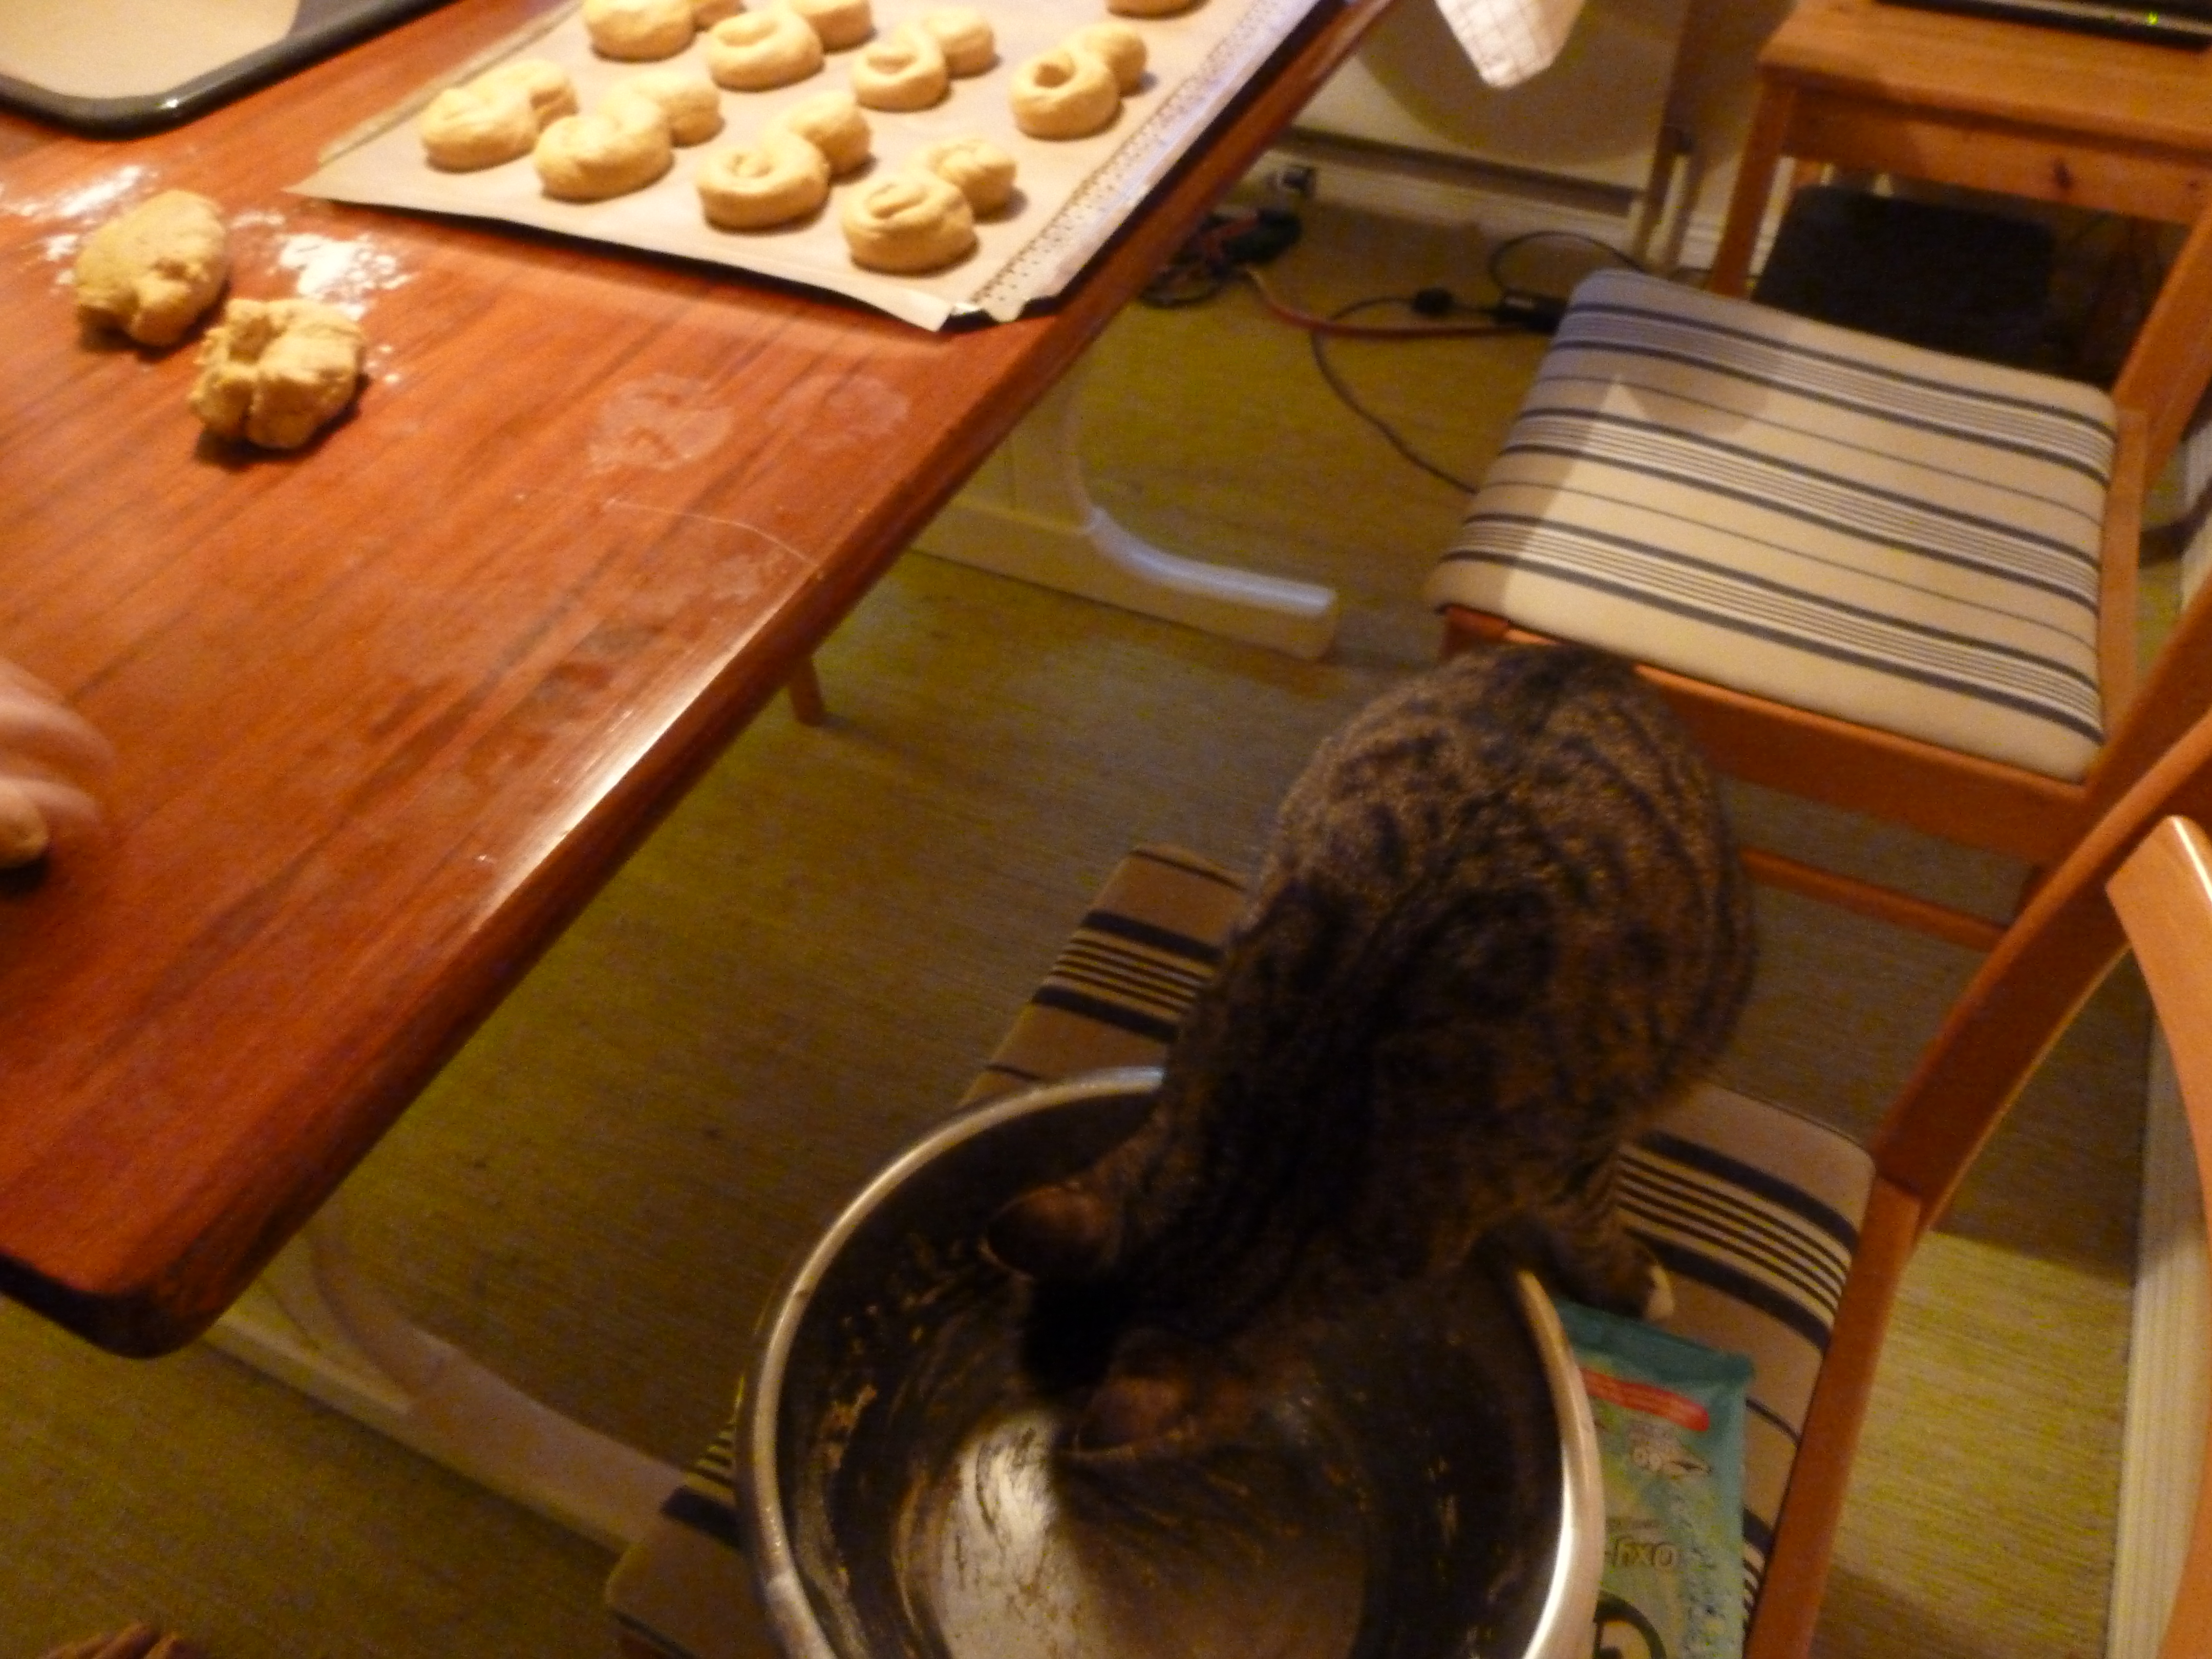 Saffran är inte bra för oss katter säger dom. Men om jag bara slickar skålen lite gör det väl inget?